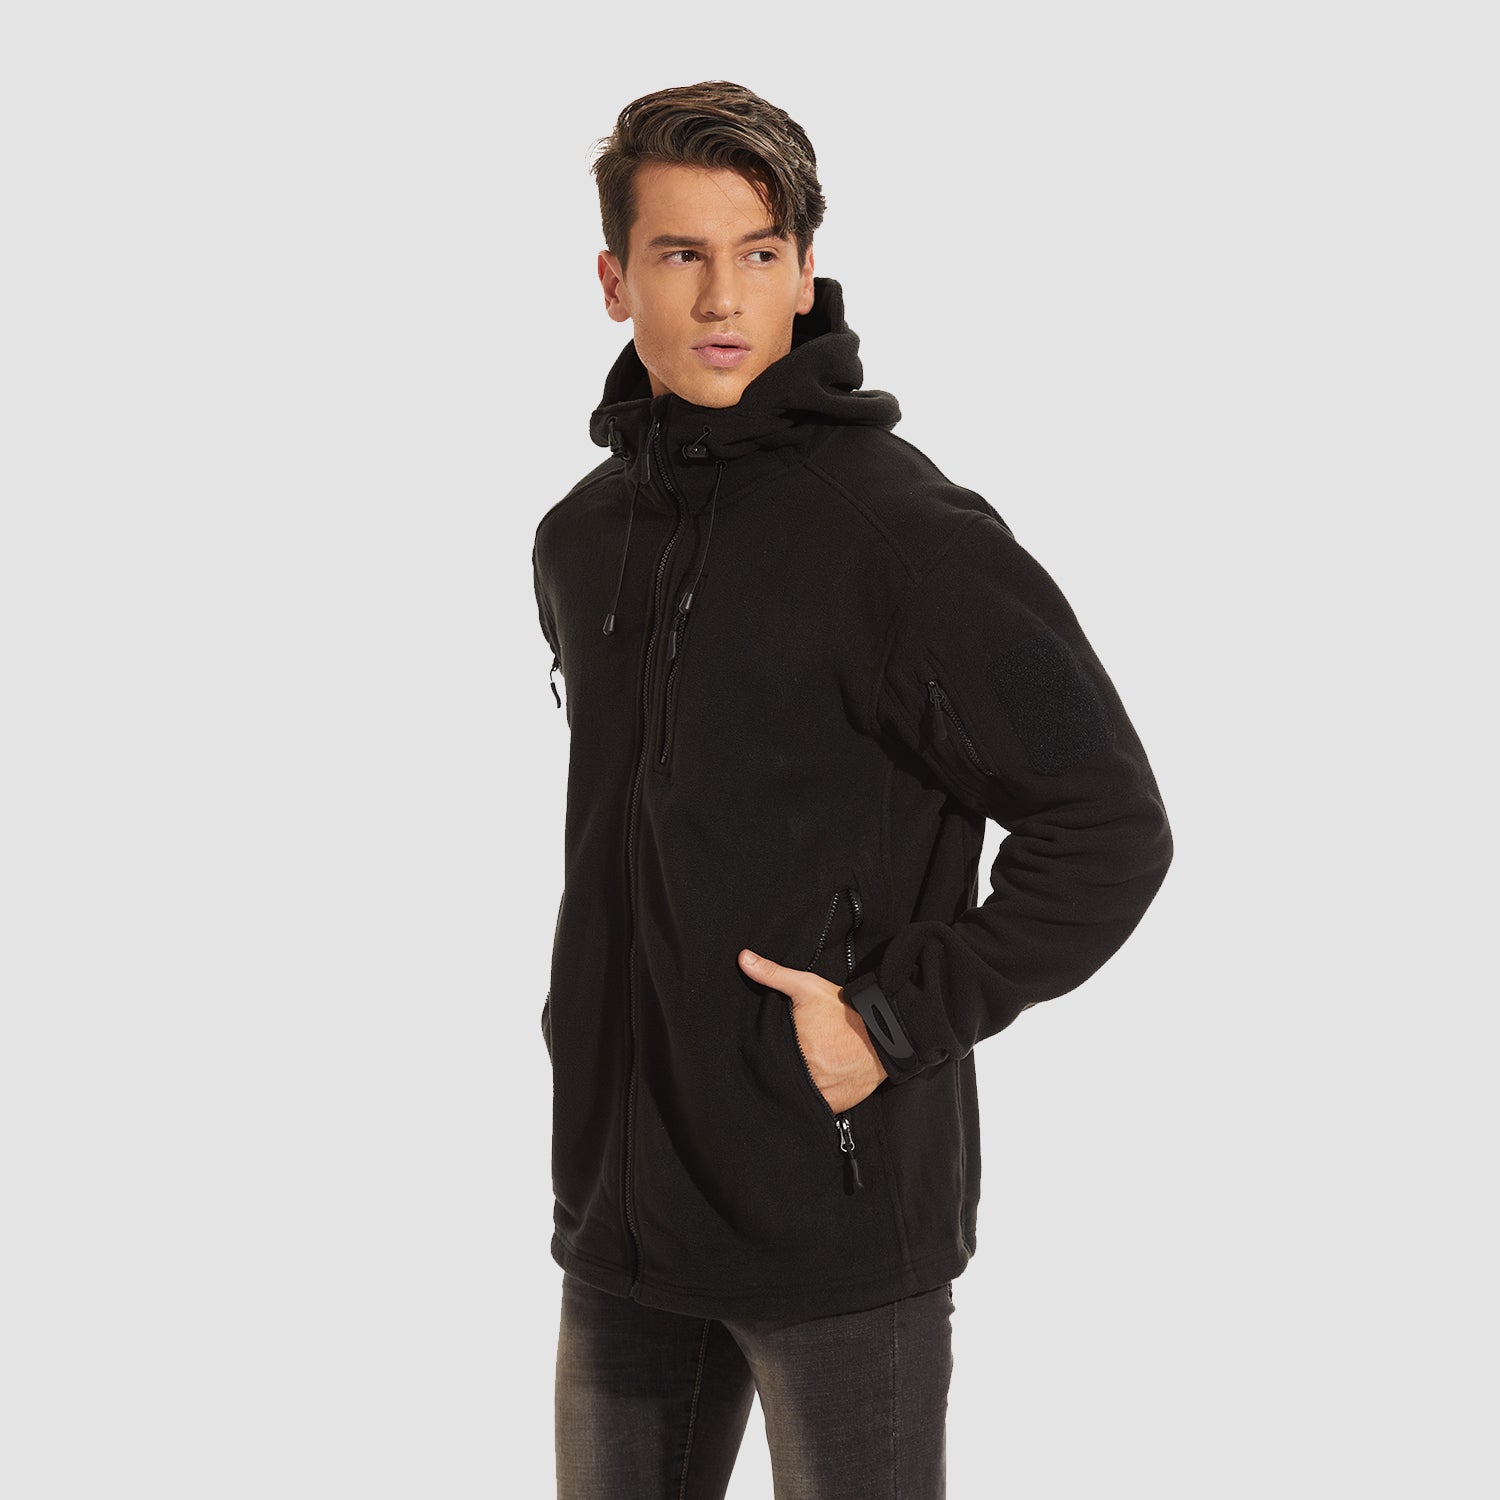 Men's Fleece Hoodie Jacket 5 Zip-Pockets Military Tactical Coat Windproof Winter Full Zip Hiking Work Outwear